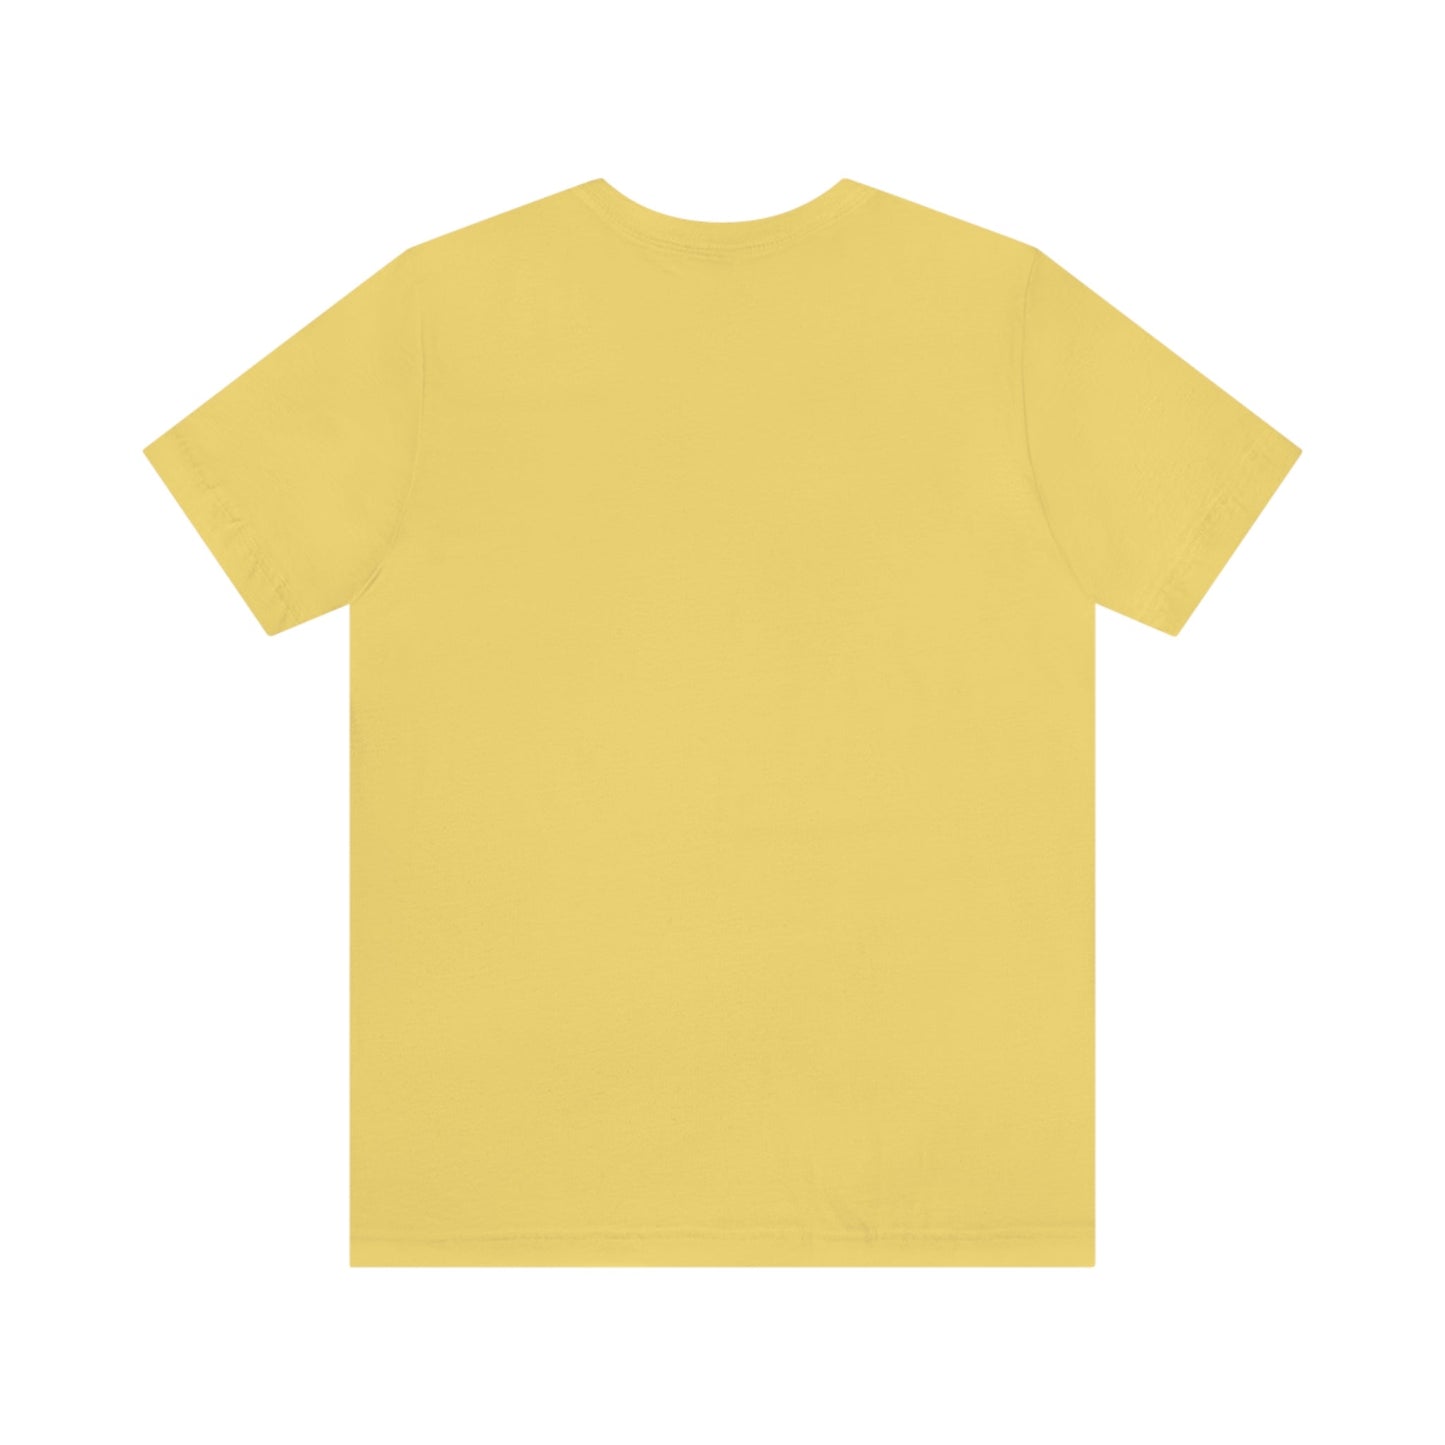 INTROVERT EXTROVERT BOOKTROVERT T-shirt Unisex Jersey Short Sleeve Tee - Rachel Hanna